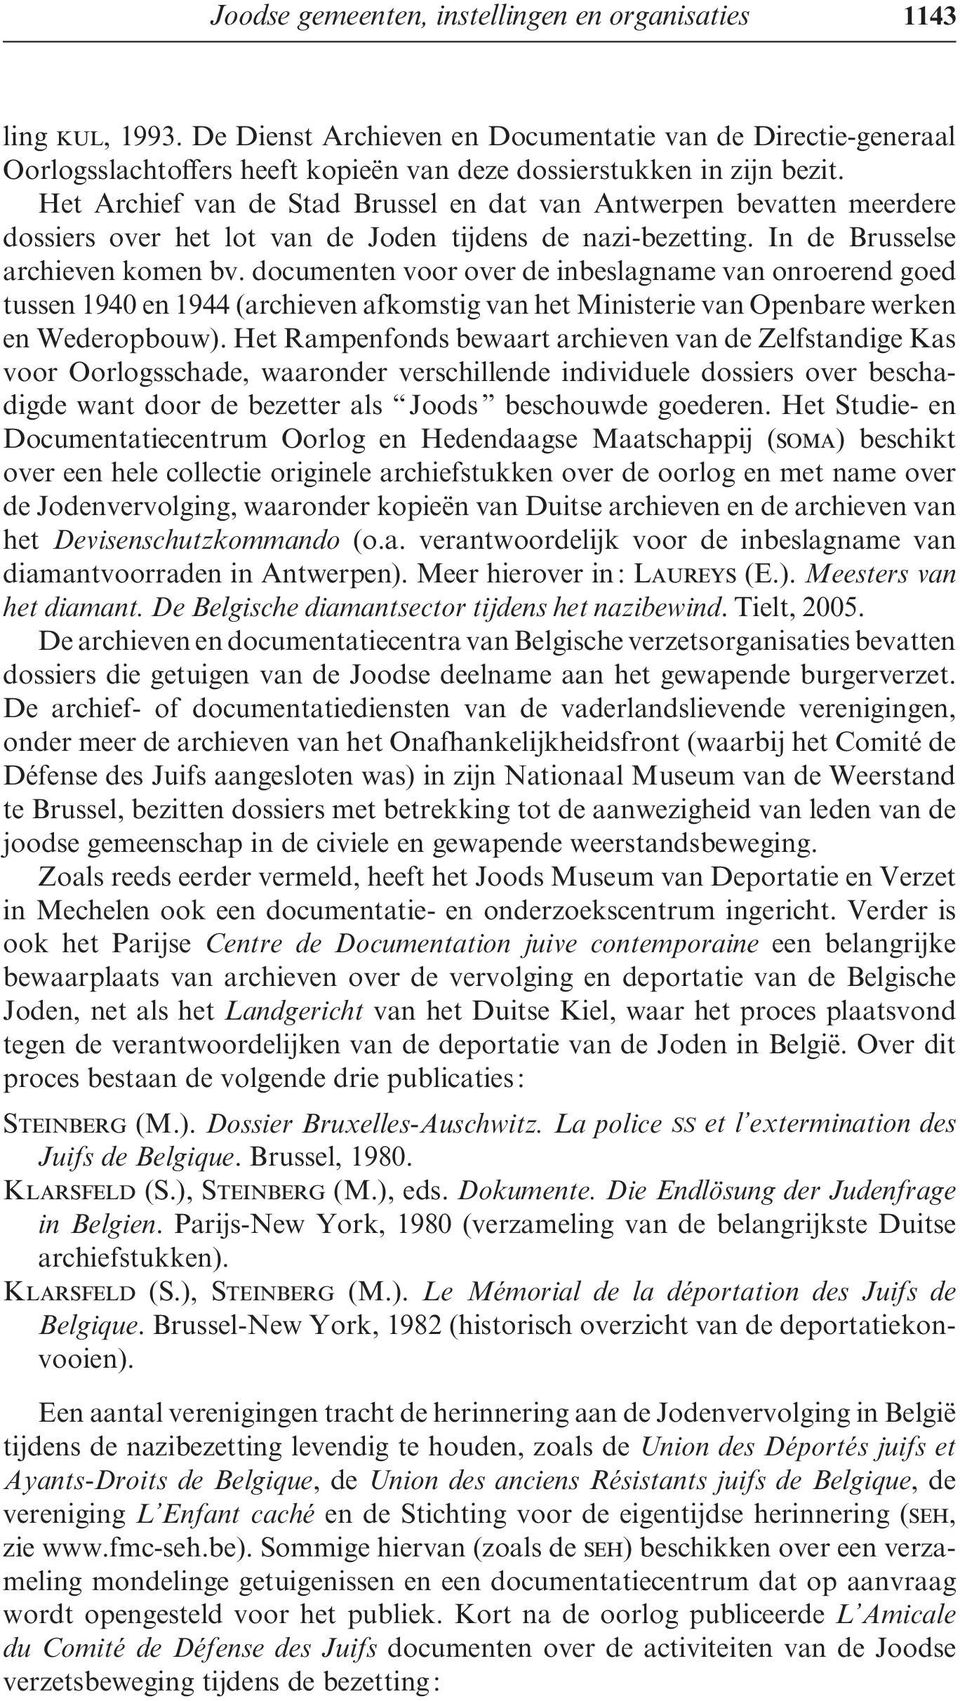 Het Archief van de Stad Brussel en dat van Antwerpen bevatten meerdere dossiers over het lot van de Joden tijdens de nazi-bezetting. In de Brusselse archieven komen bv.